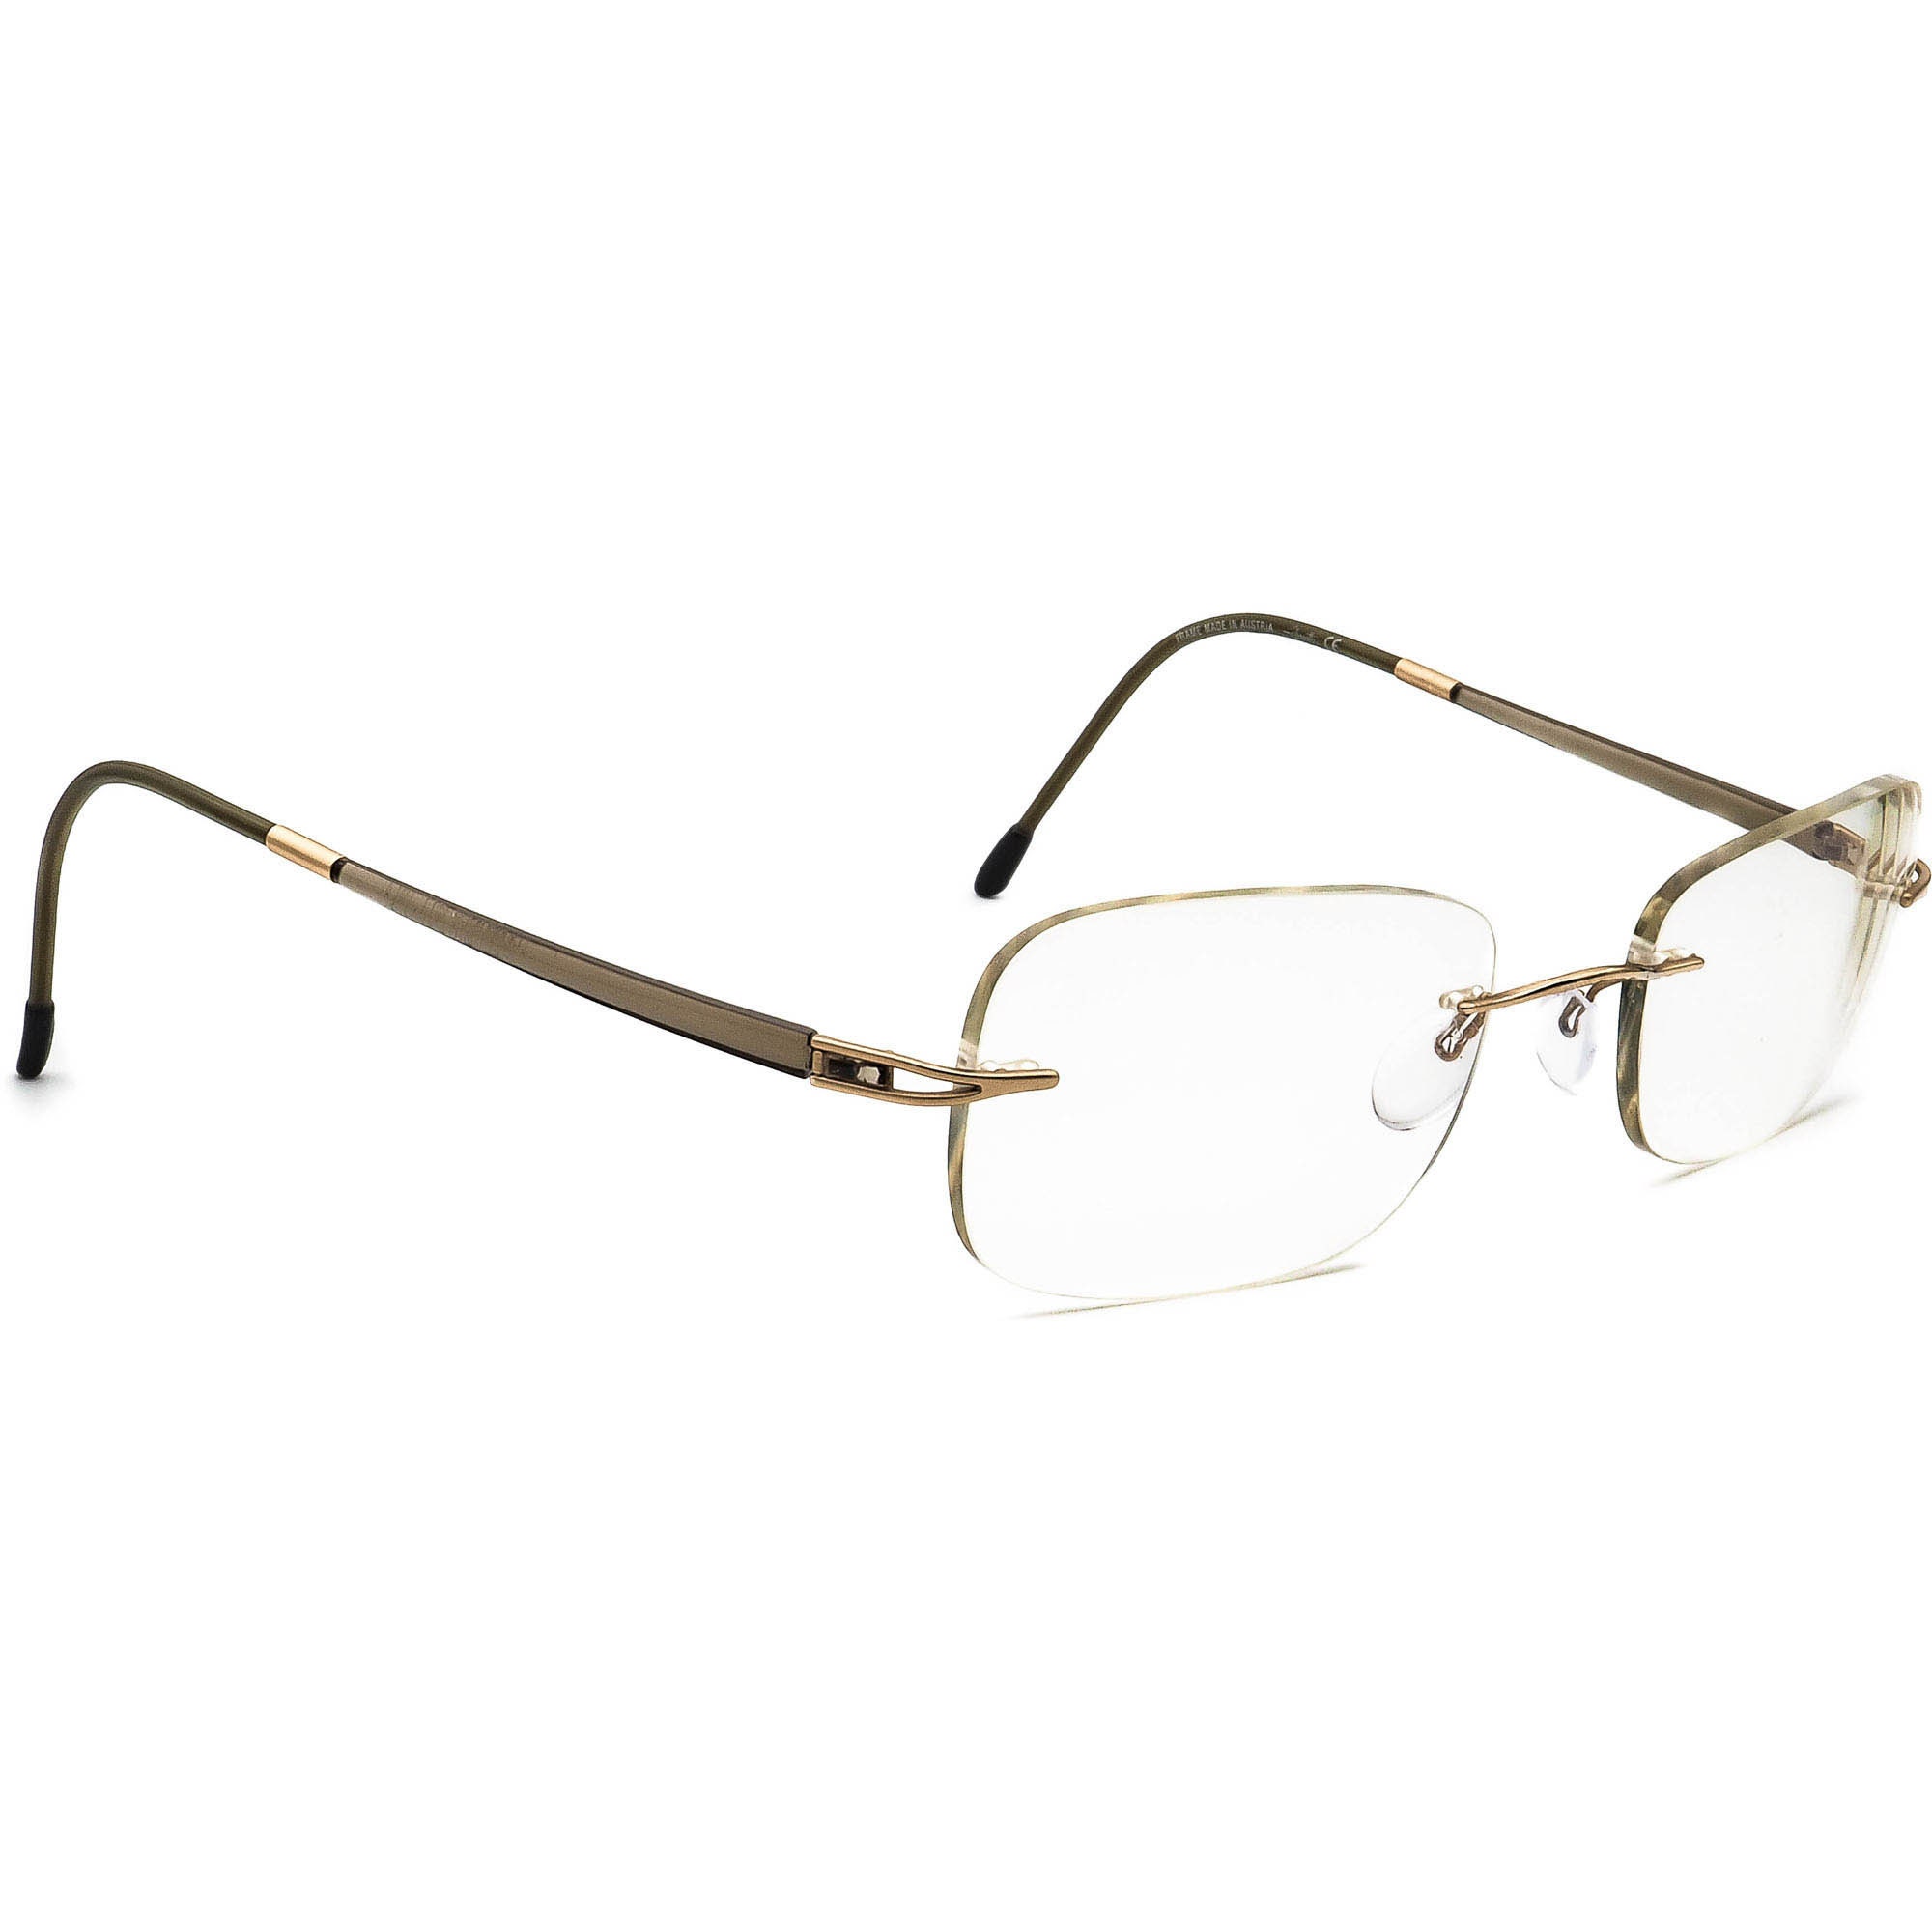 Silhouette Eyeglasses 7622 20 6051 Titan Gold/green Rimless - Etsy Denmark